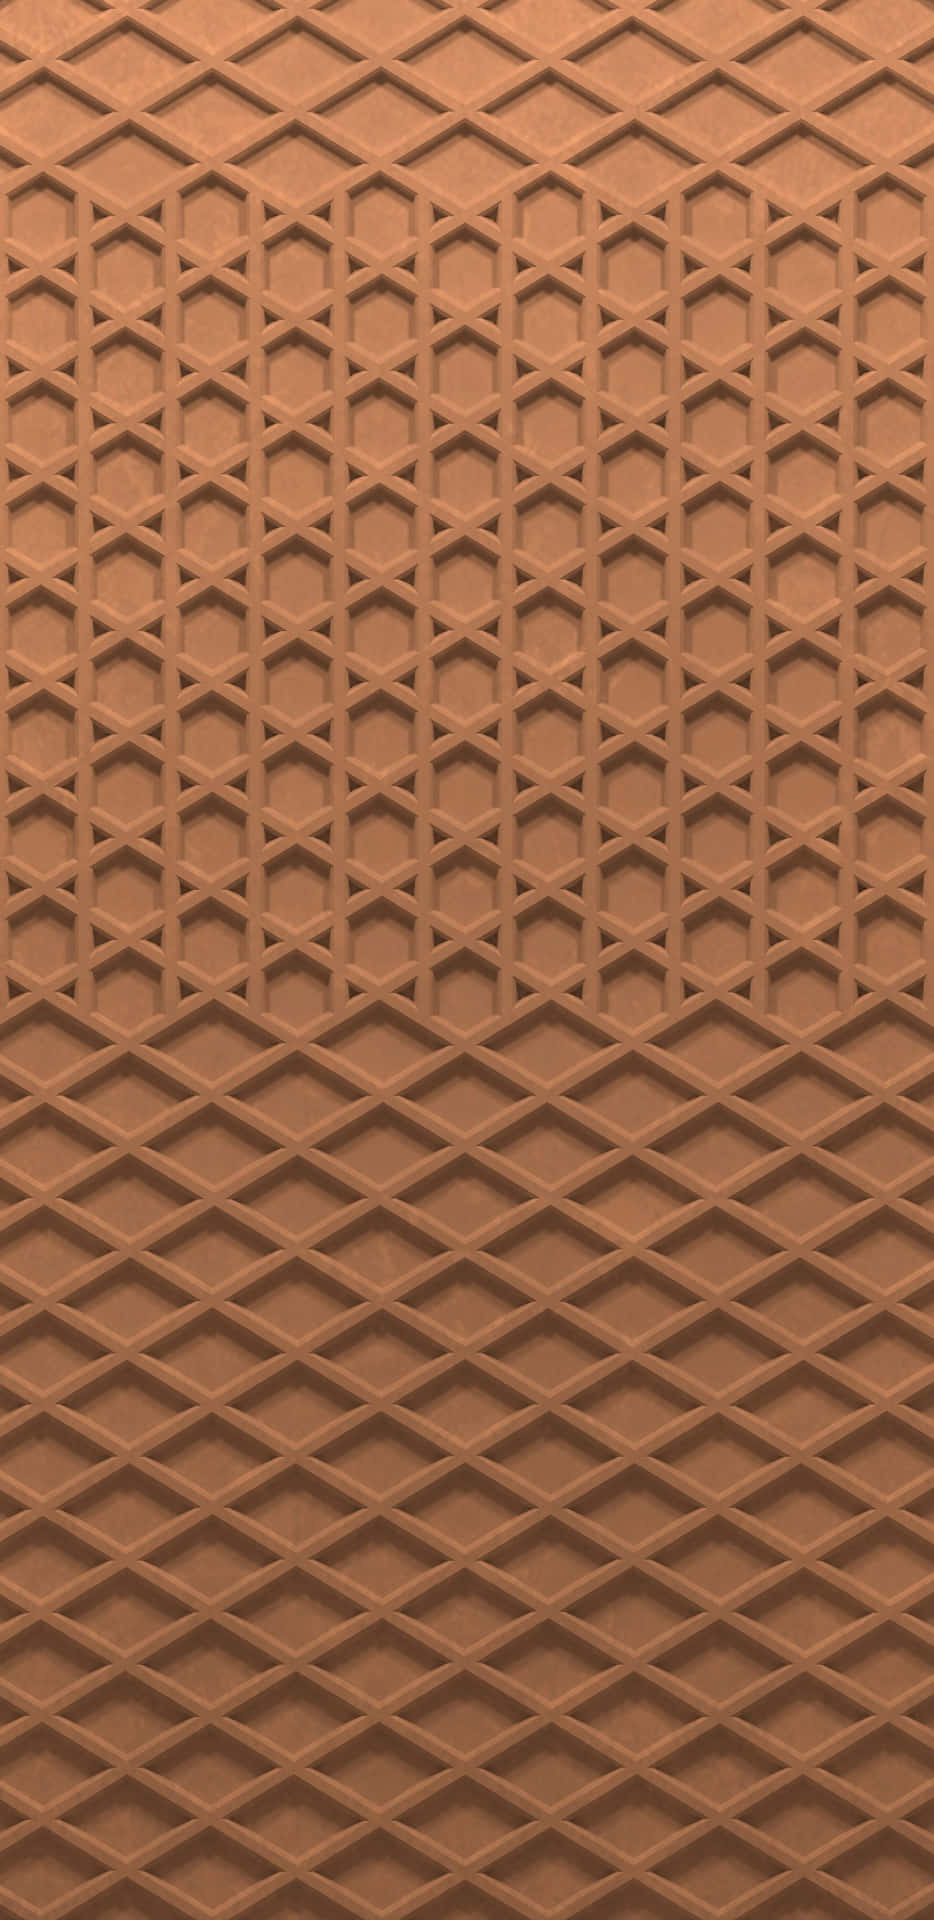 Vans Shoe Sole Waffle Pattern Wallpaper